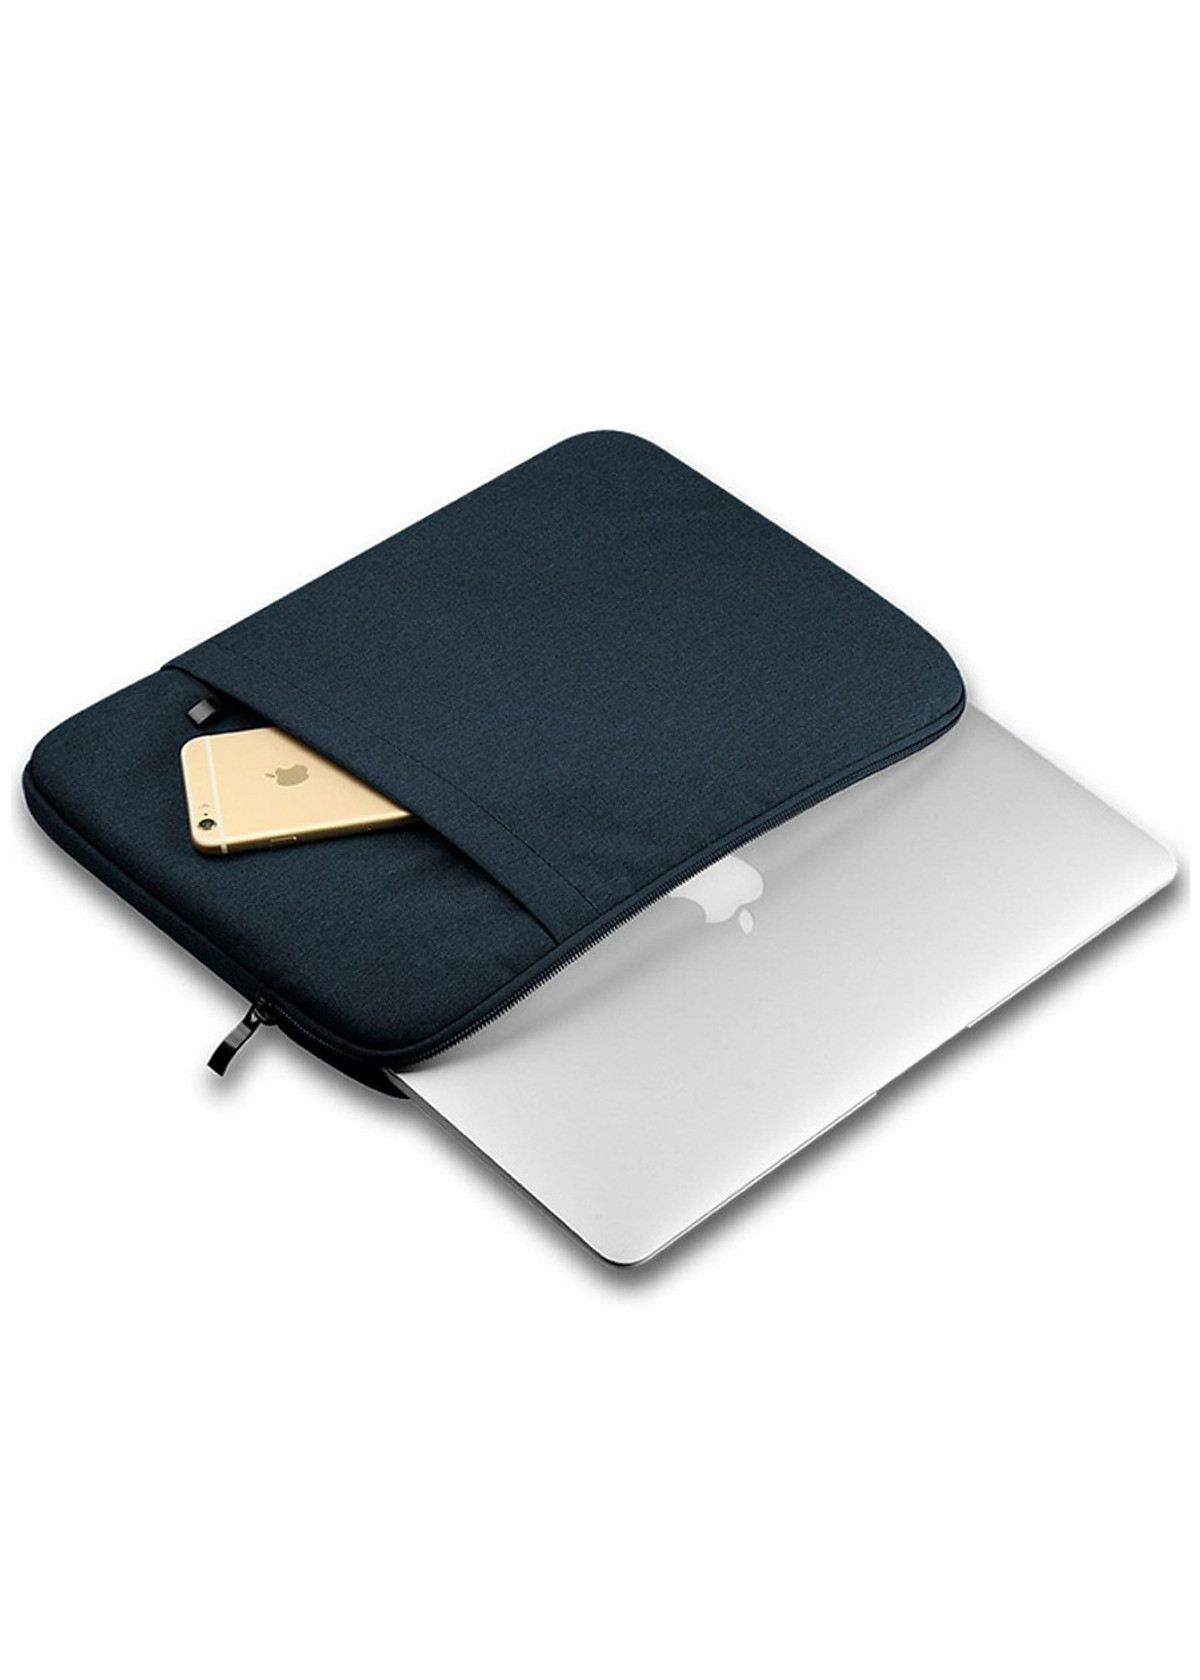 Túi chống sốc cho macbook - laptop